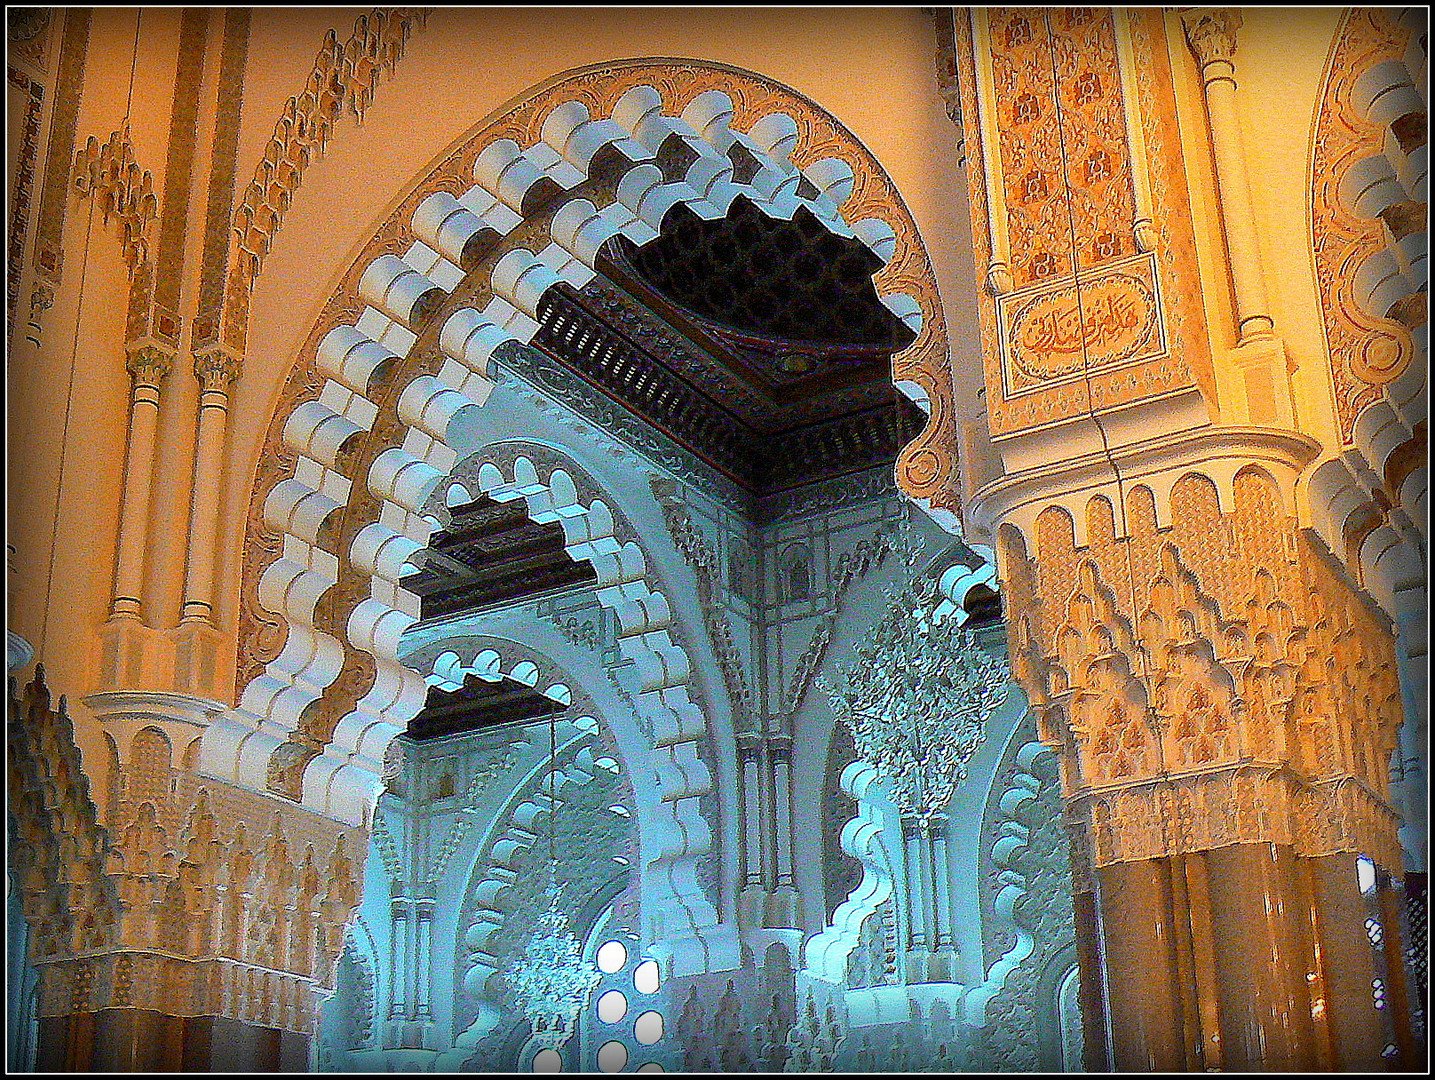 CROISIERE - Escale au Maroc - Mosquée 9 - 